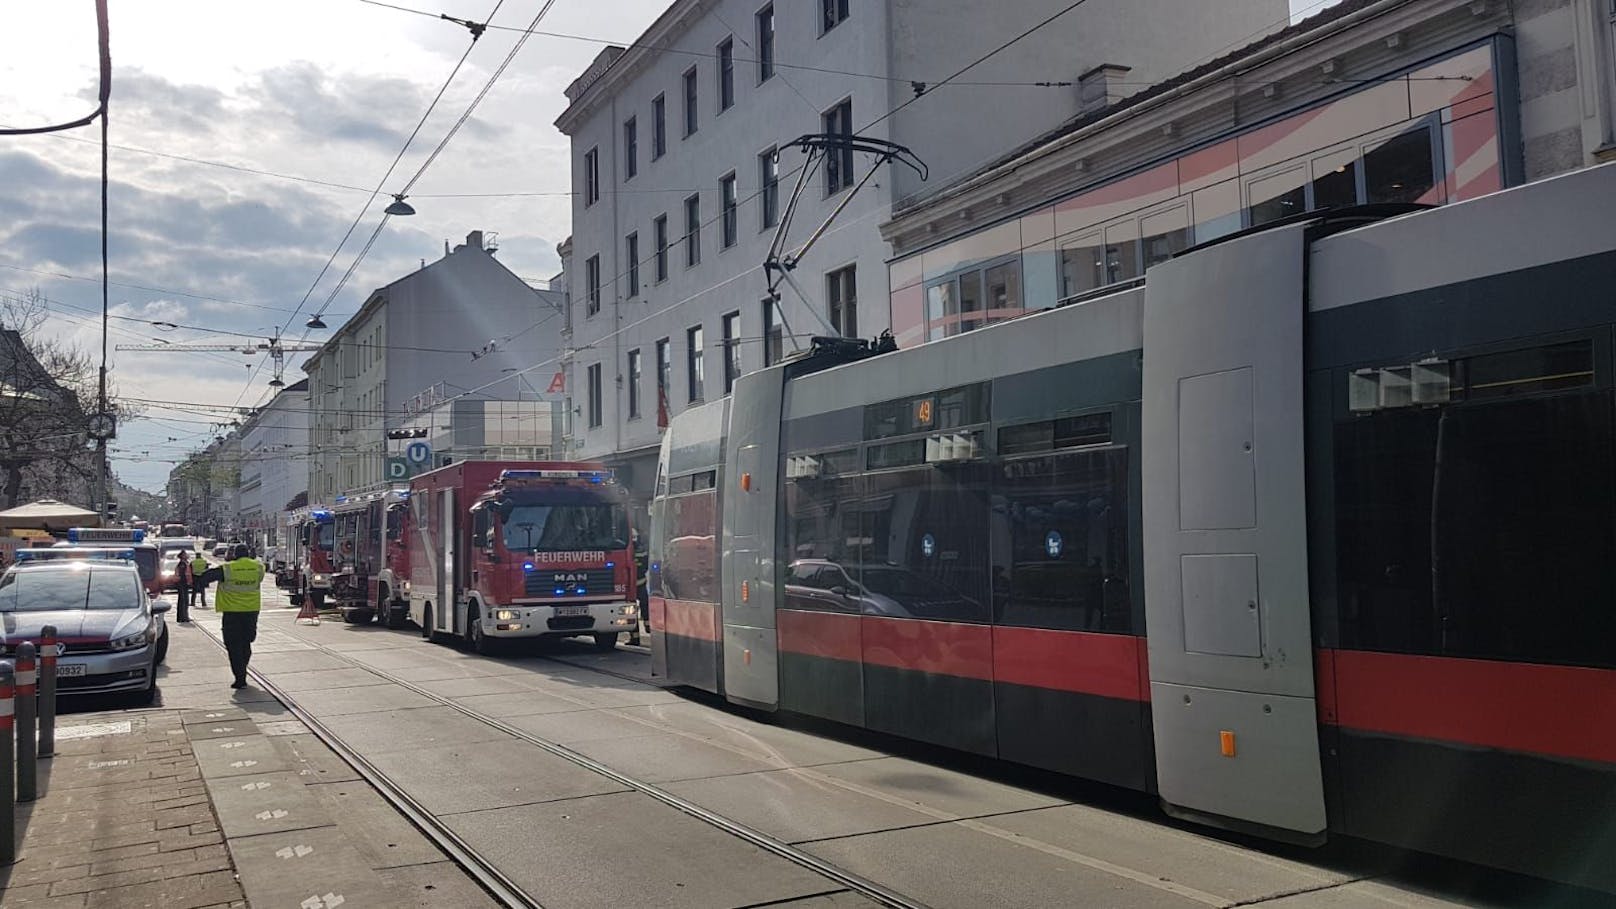 Feuerwehr-Einsatz am Donnerstag in der Hütteldorfer Straße (Wien-Penzing).